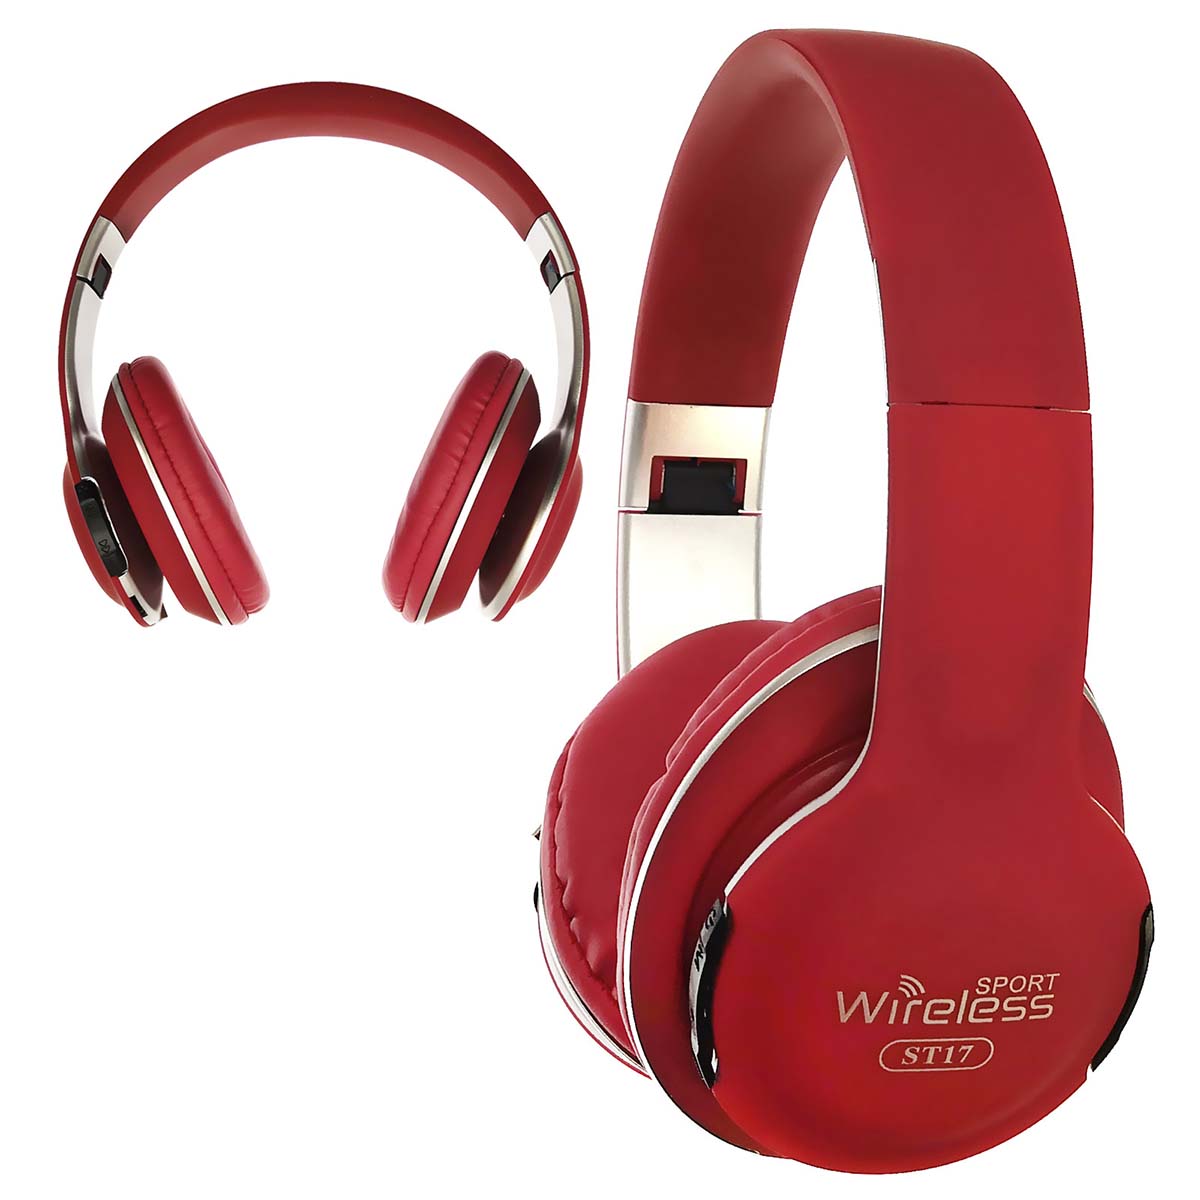 Гарнитура (наушники с микрофоном) беспроводная, полноразмерная, ST17 4.2+ERD Wireless, цвет красный.